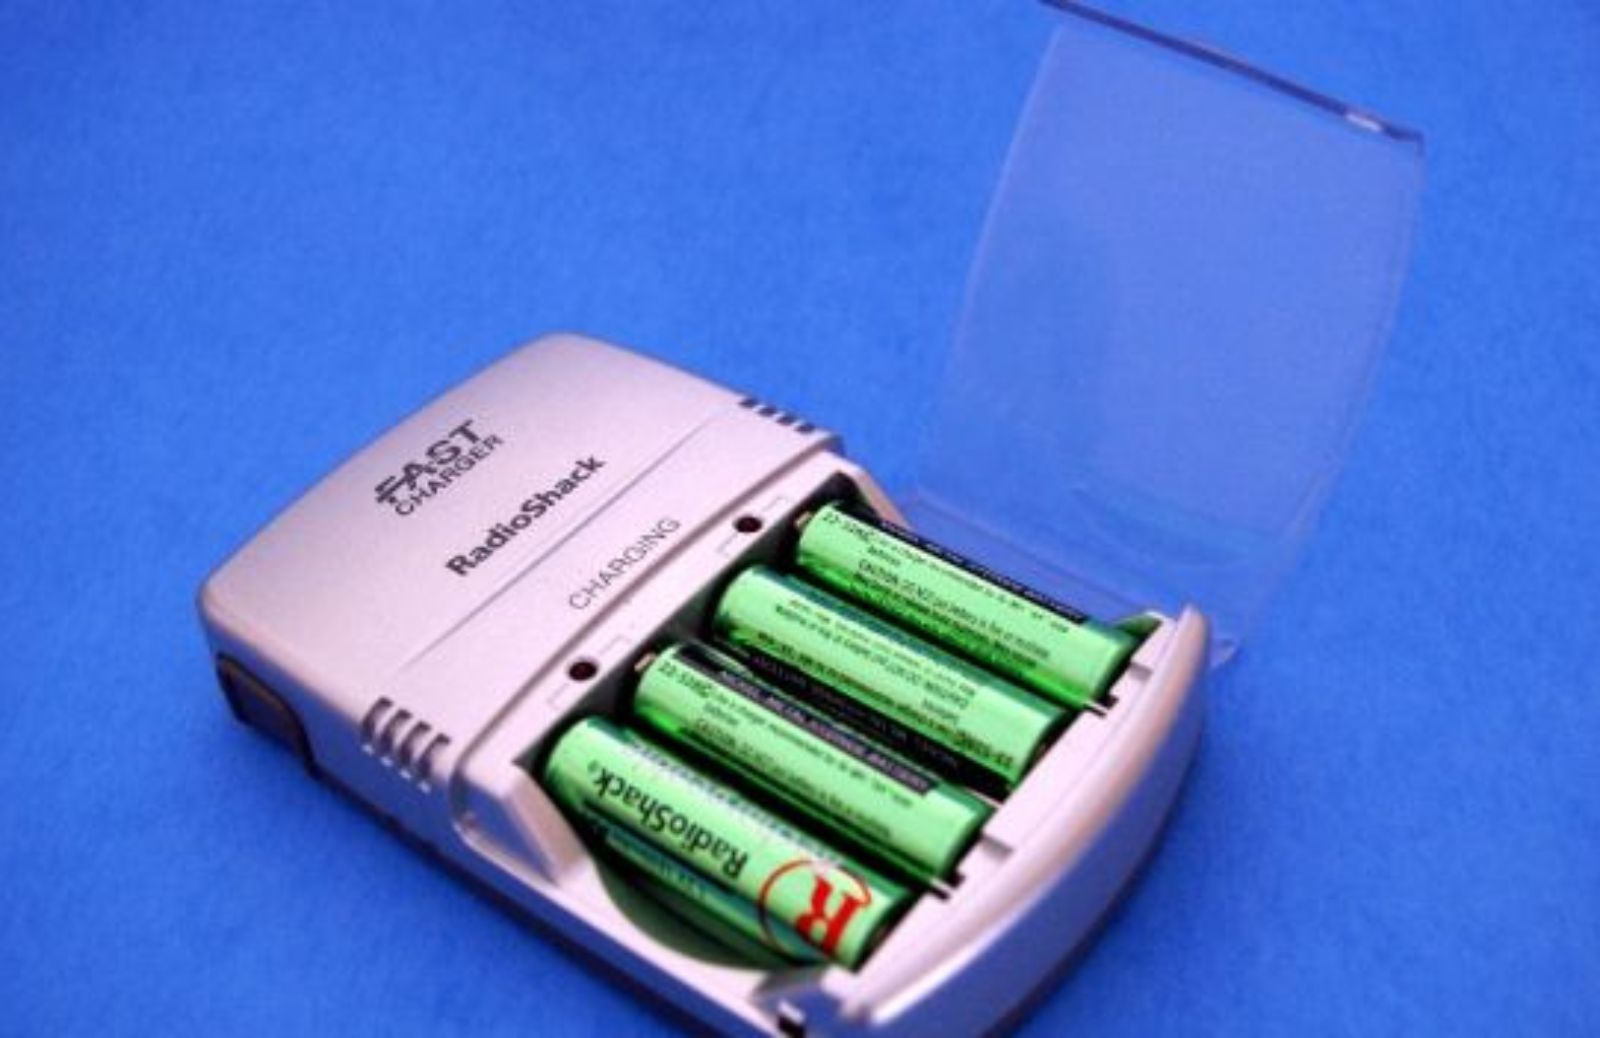 Come ridurre gli sprechi: le batterie ricaricabili